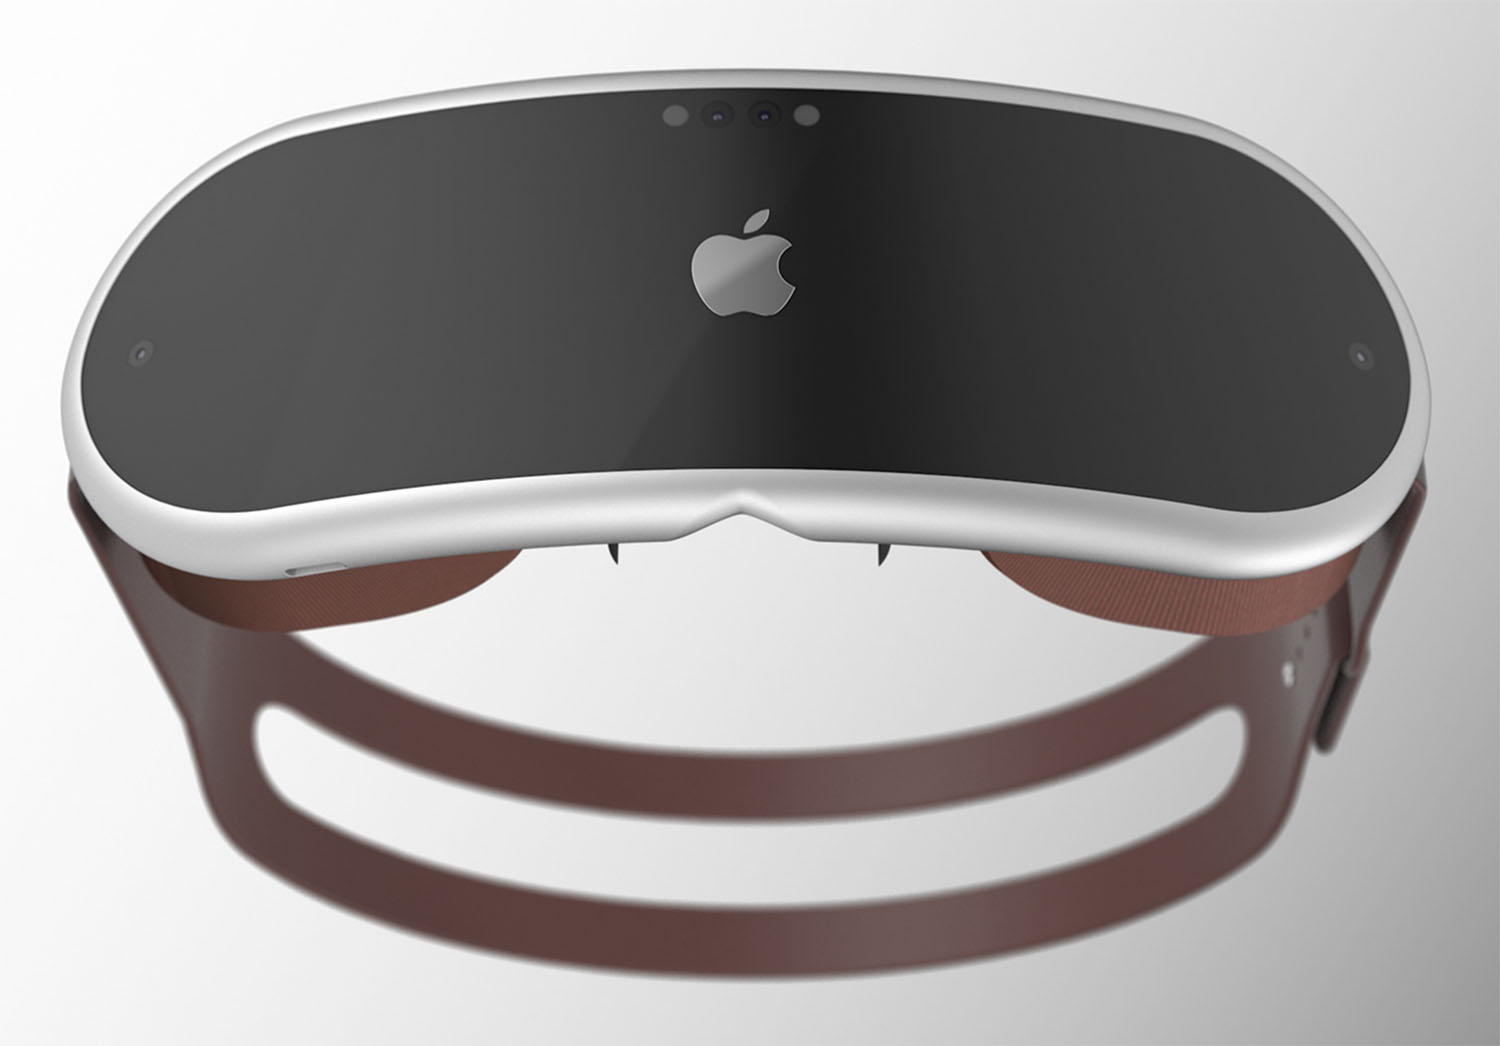 iOS 15.4 prendra en charge les casques AR / VR, une raison de plus de croire à l'arrivée du casque VR d'Apple